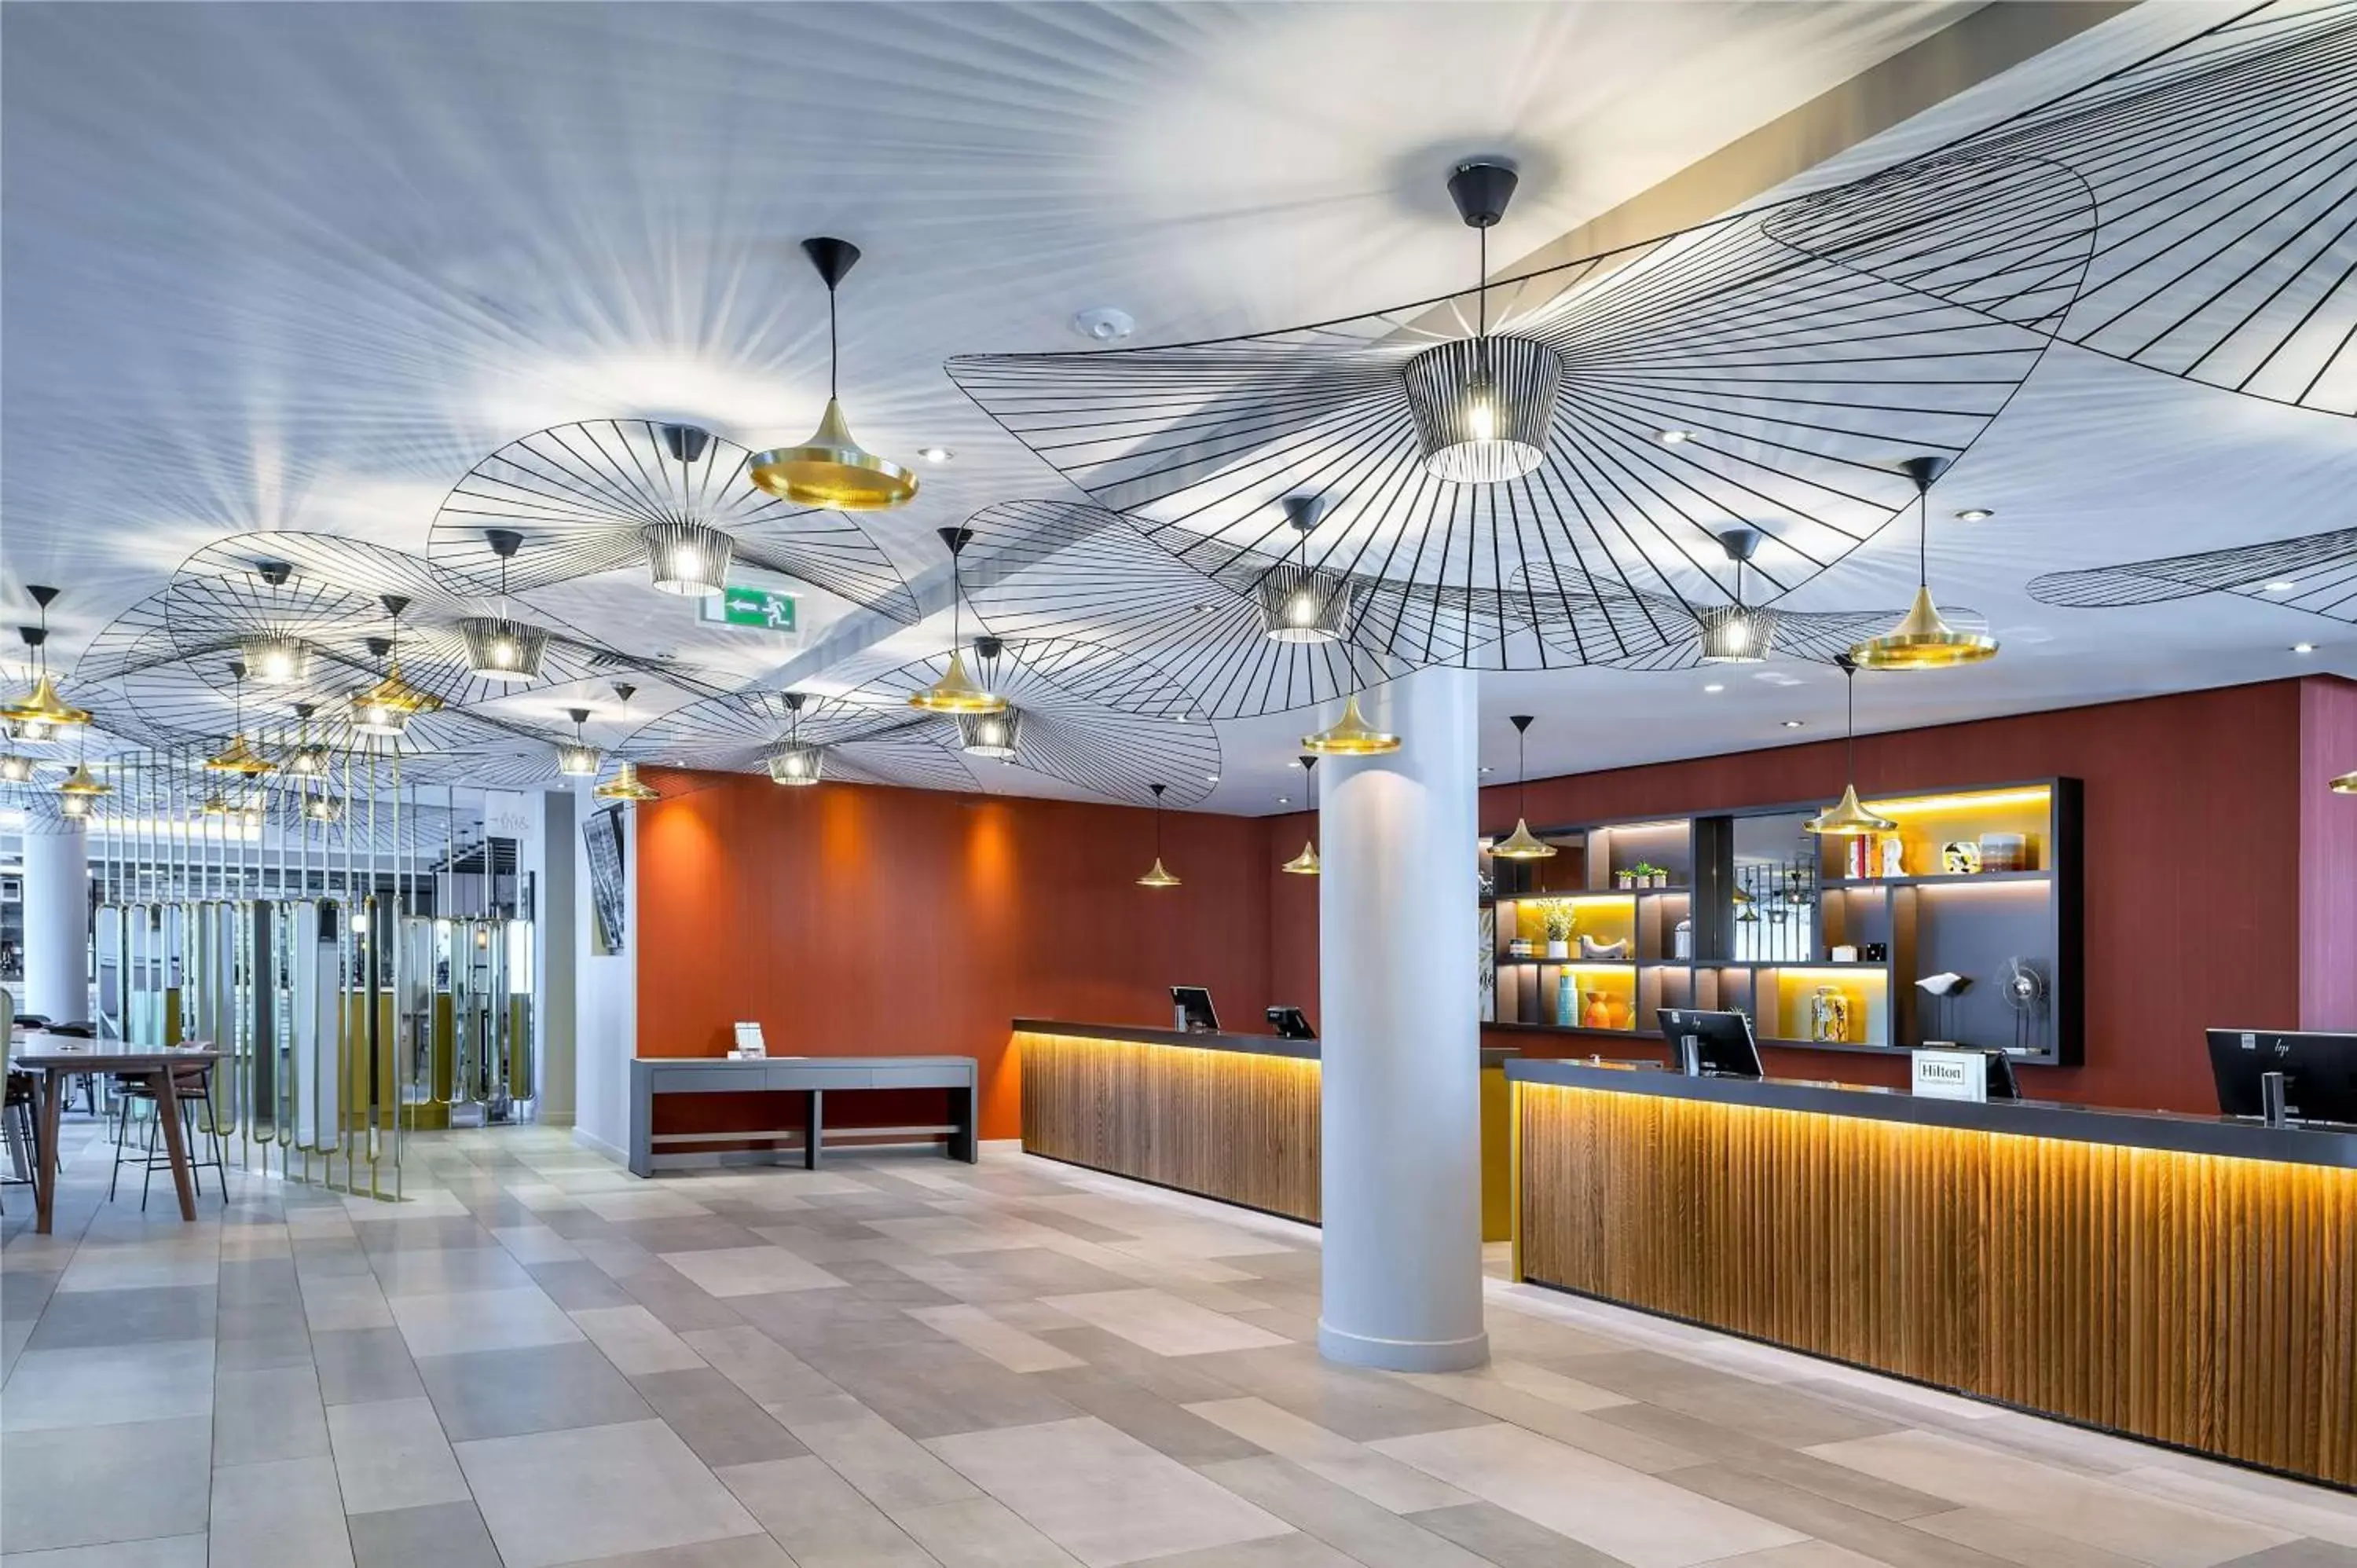 Lobby or reception in Hilton Garden Inn London Heathrow Airport